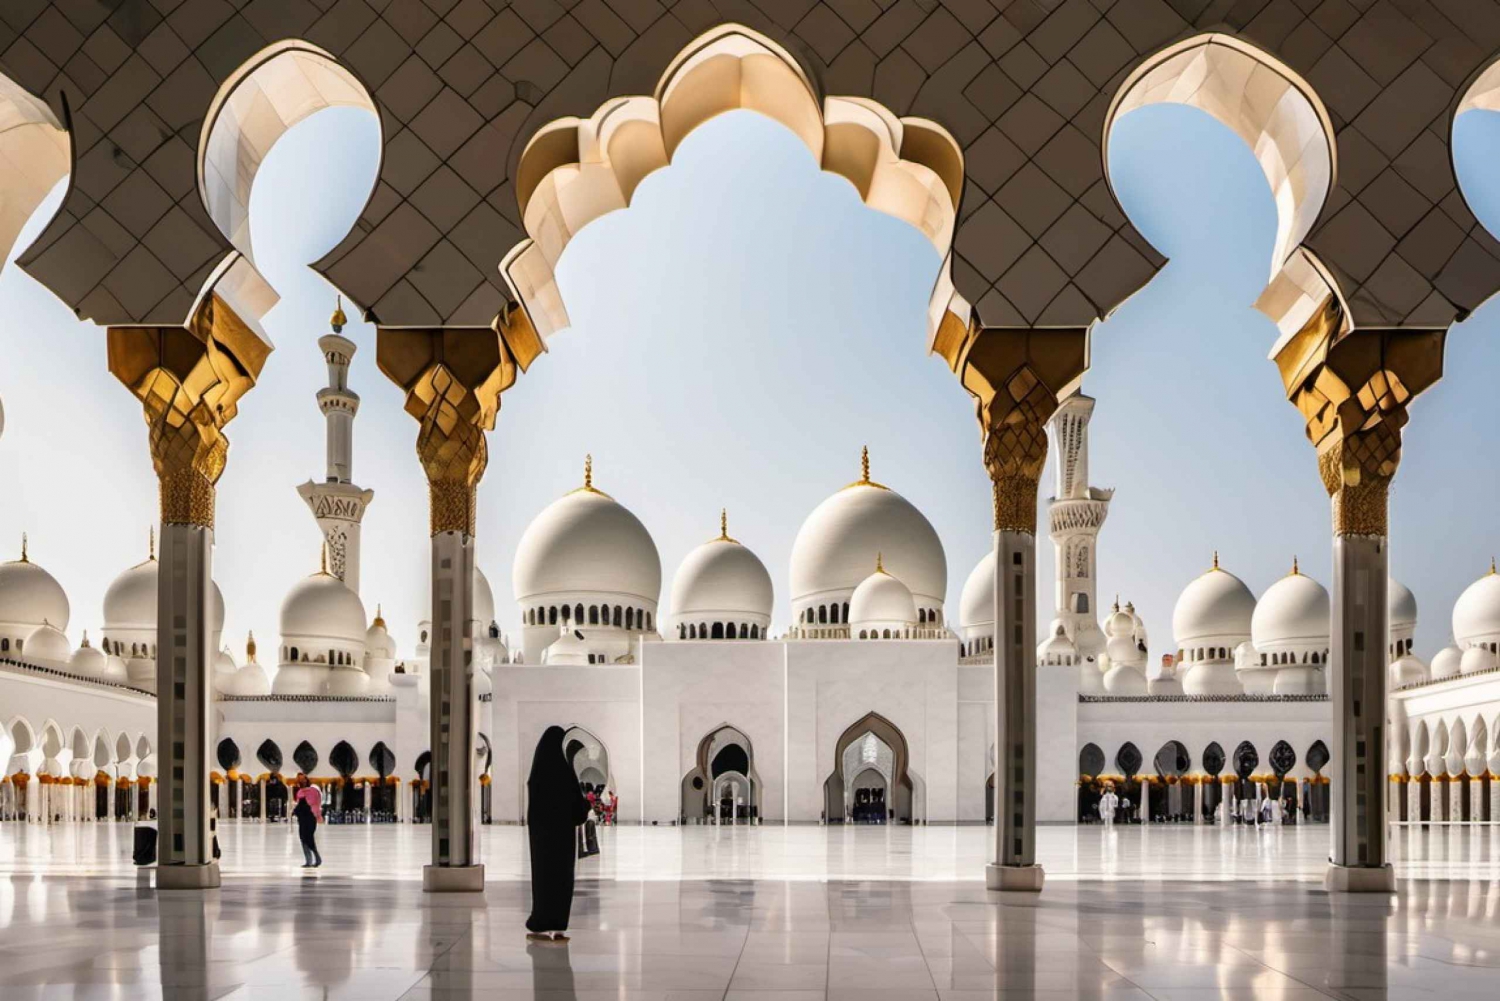 Da Dubai: Grande Moschea di Abu Dhabi e spedizione turistica